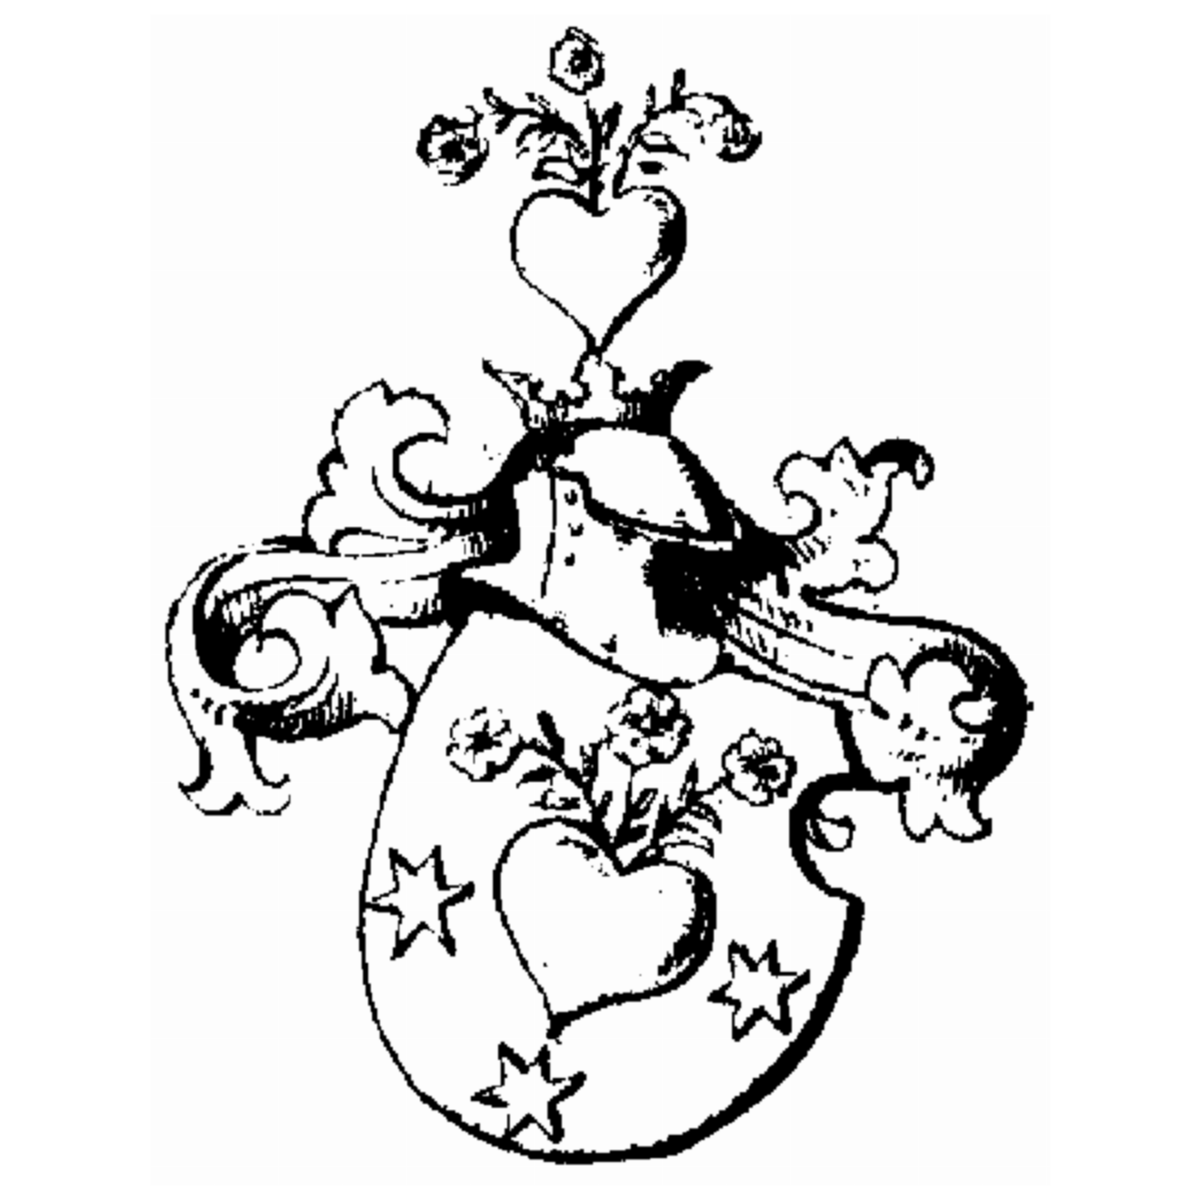 Wappen der Familie Placiola